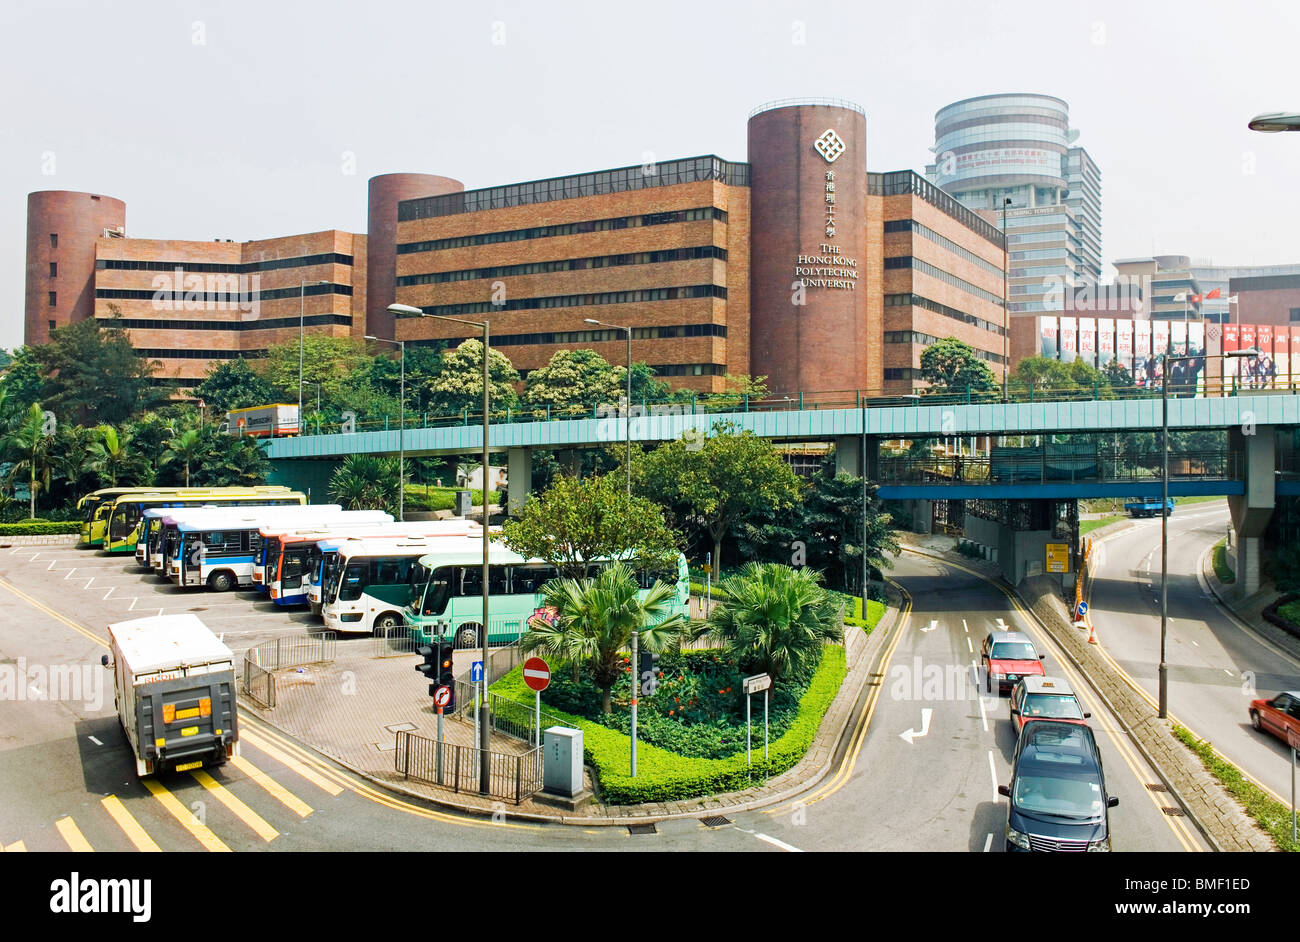 Der Hong Kong Polytechnic University, Hong Kong, China Stockfoto